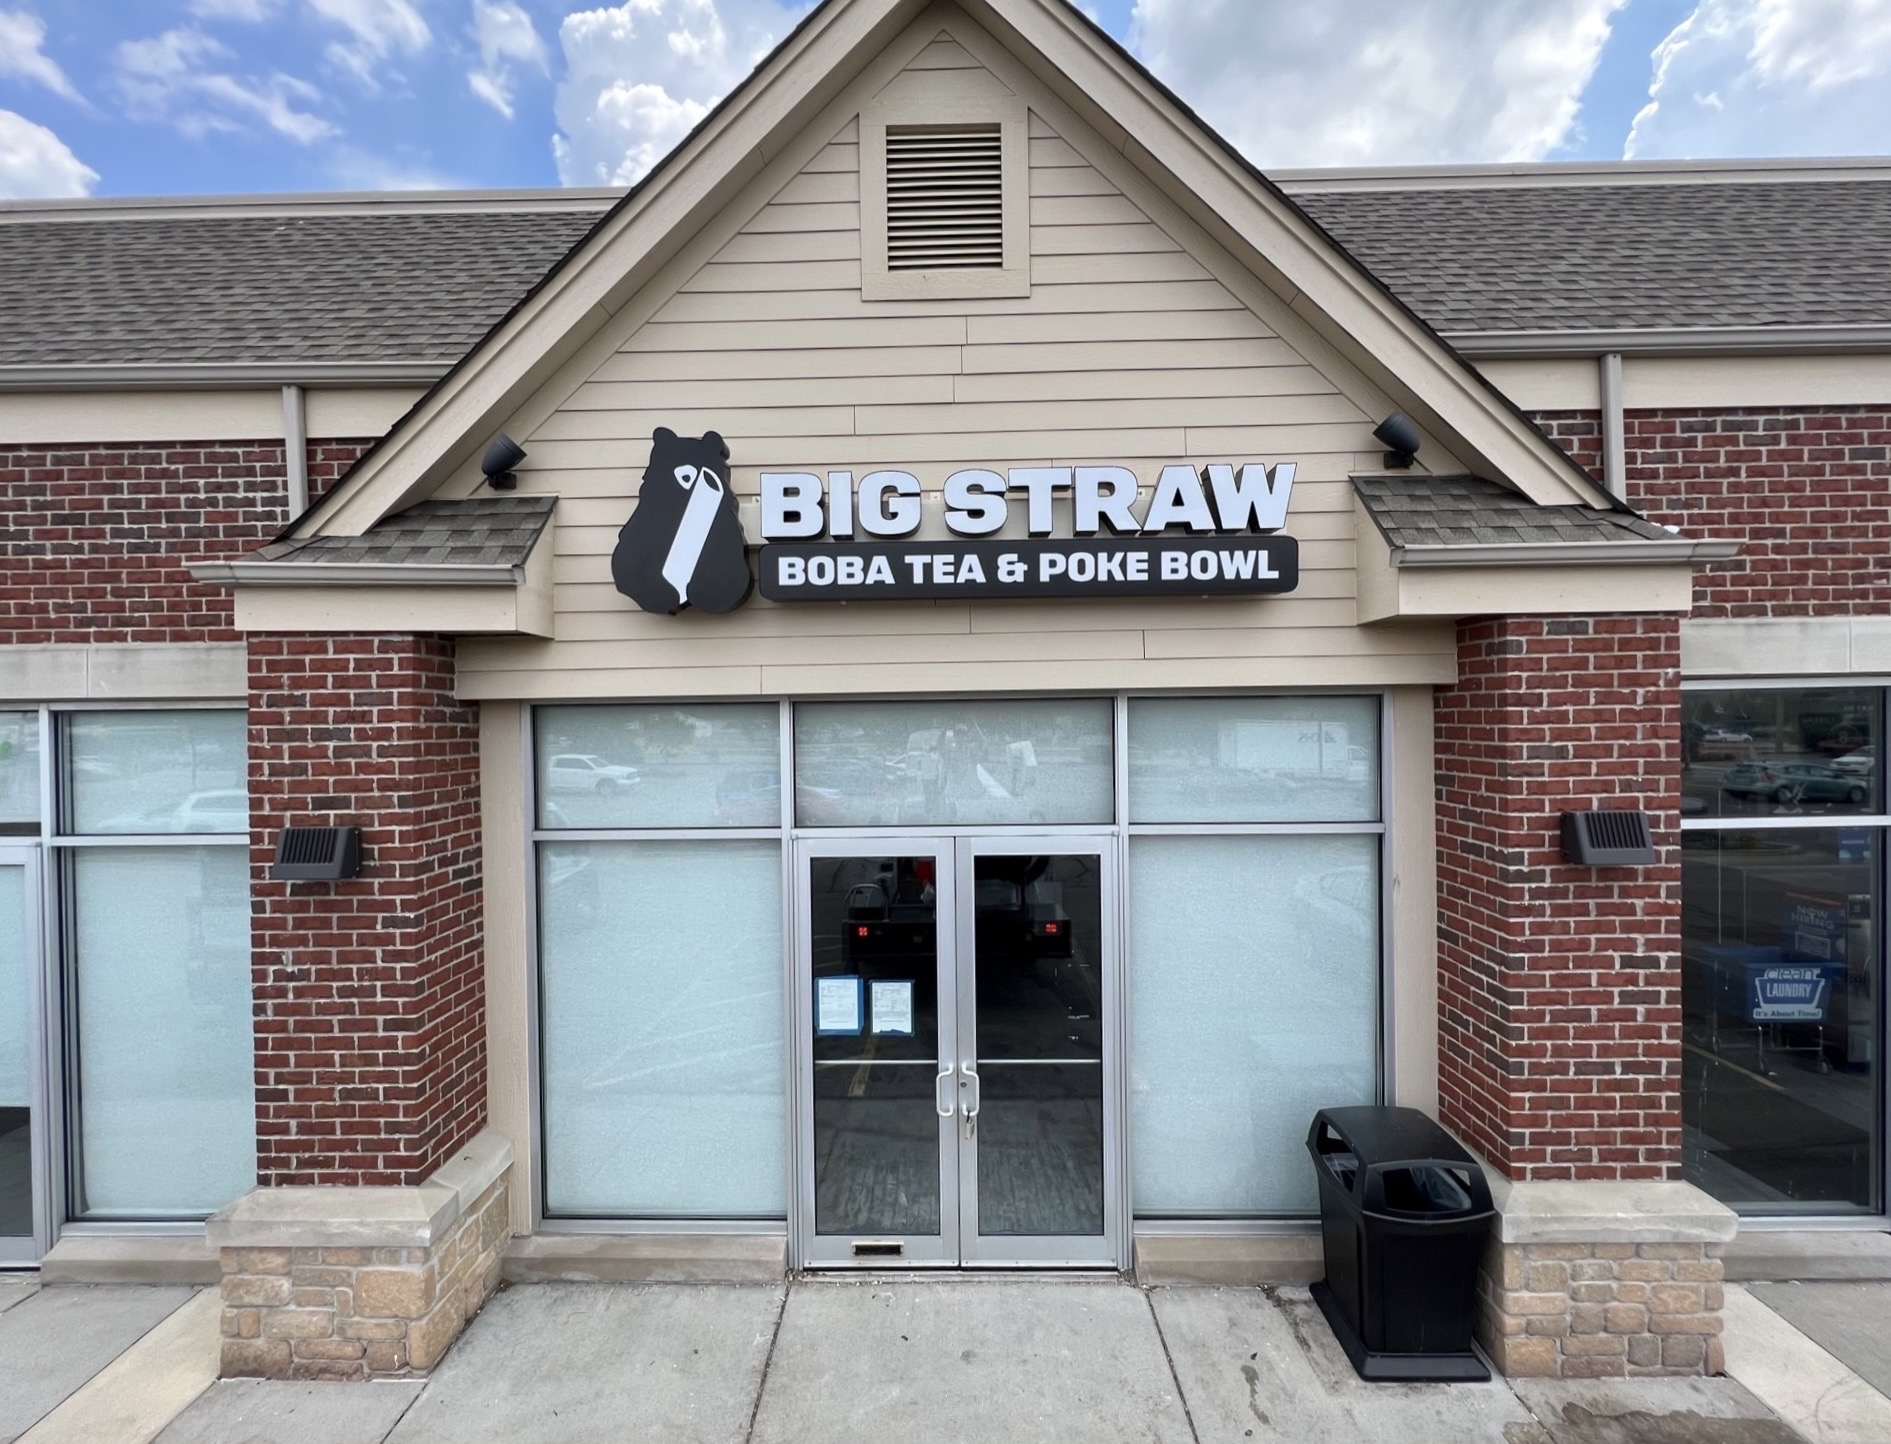 Big straw cafe